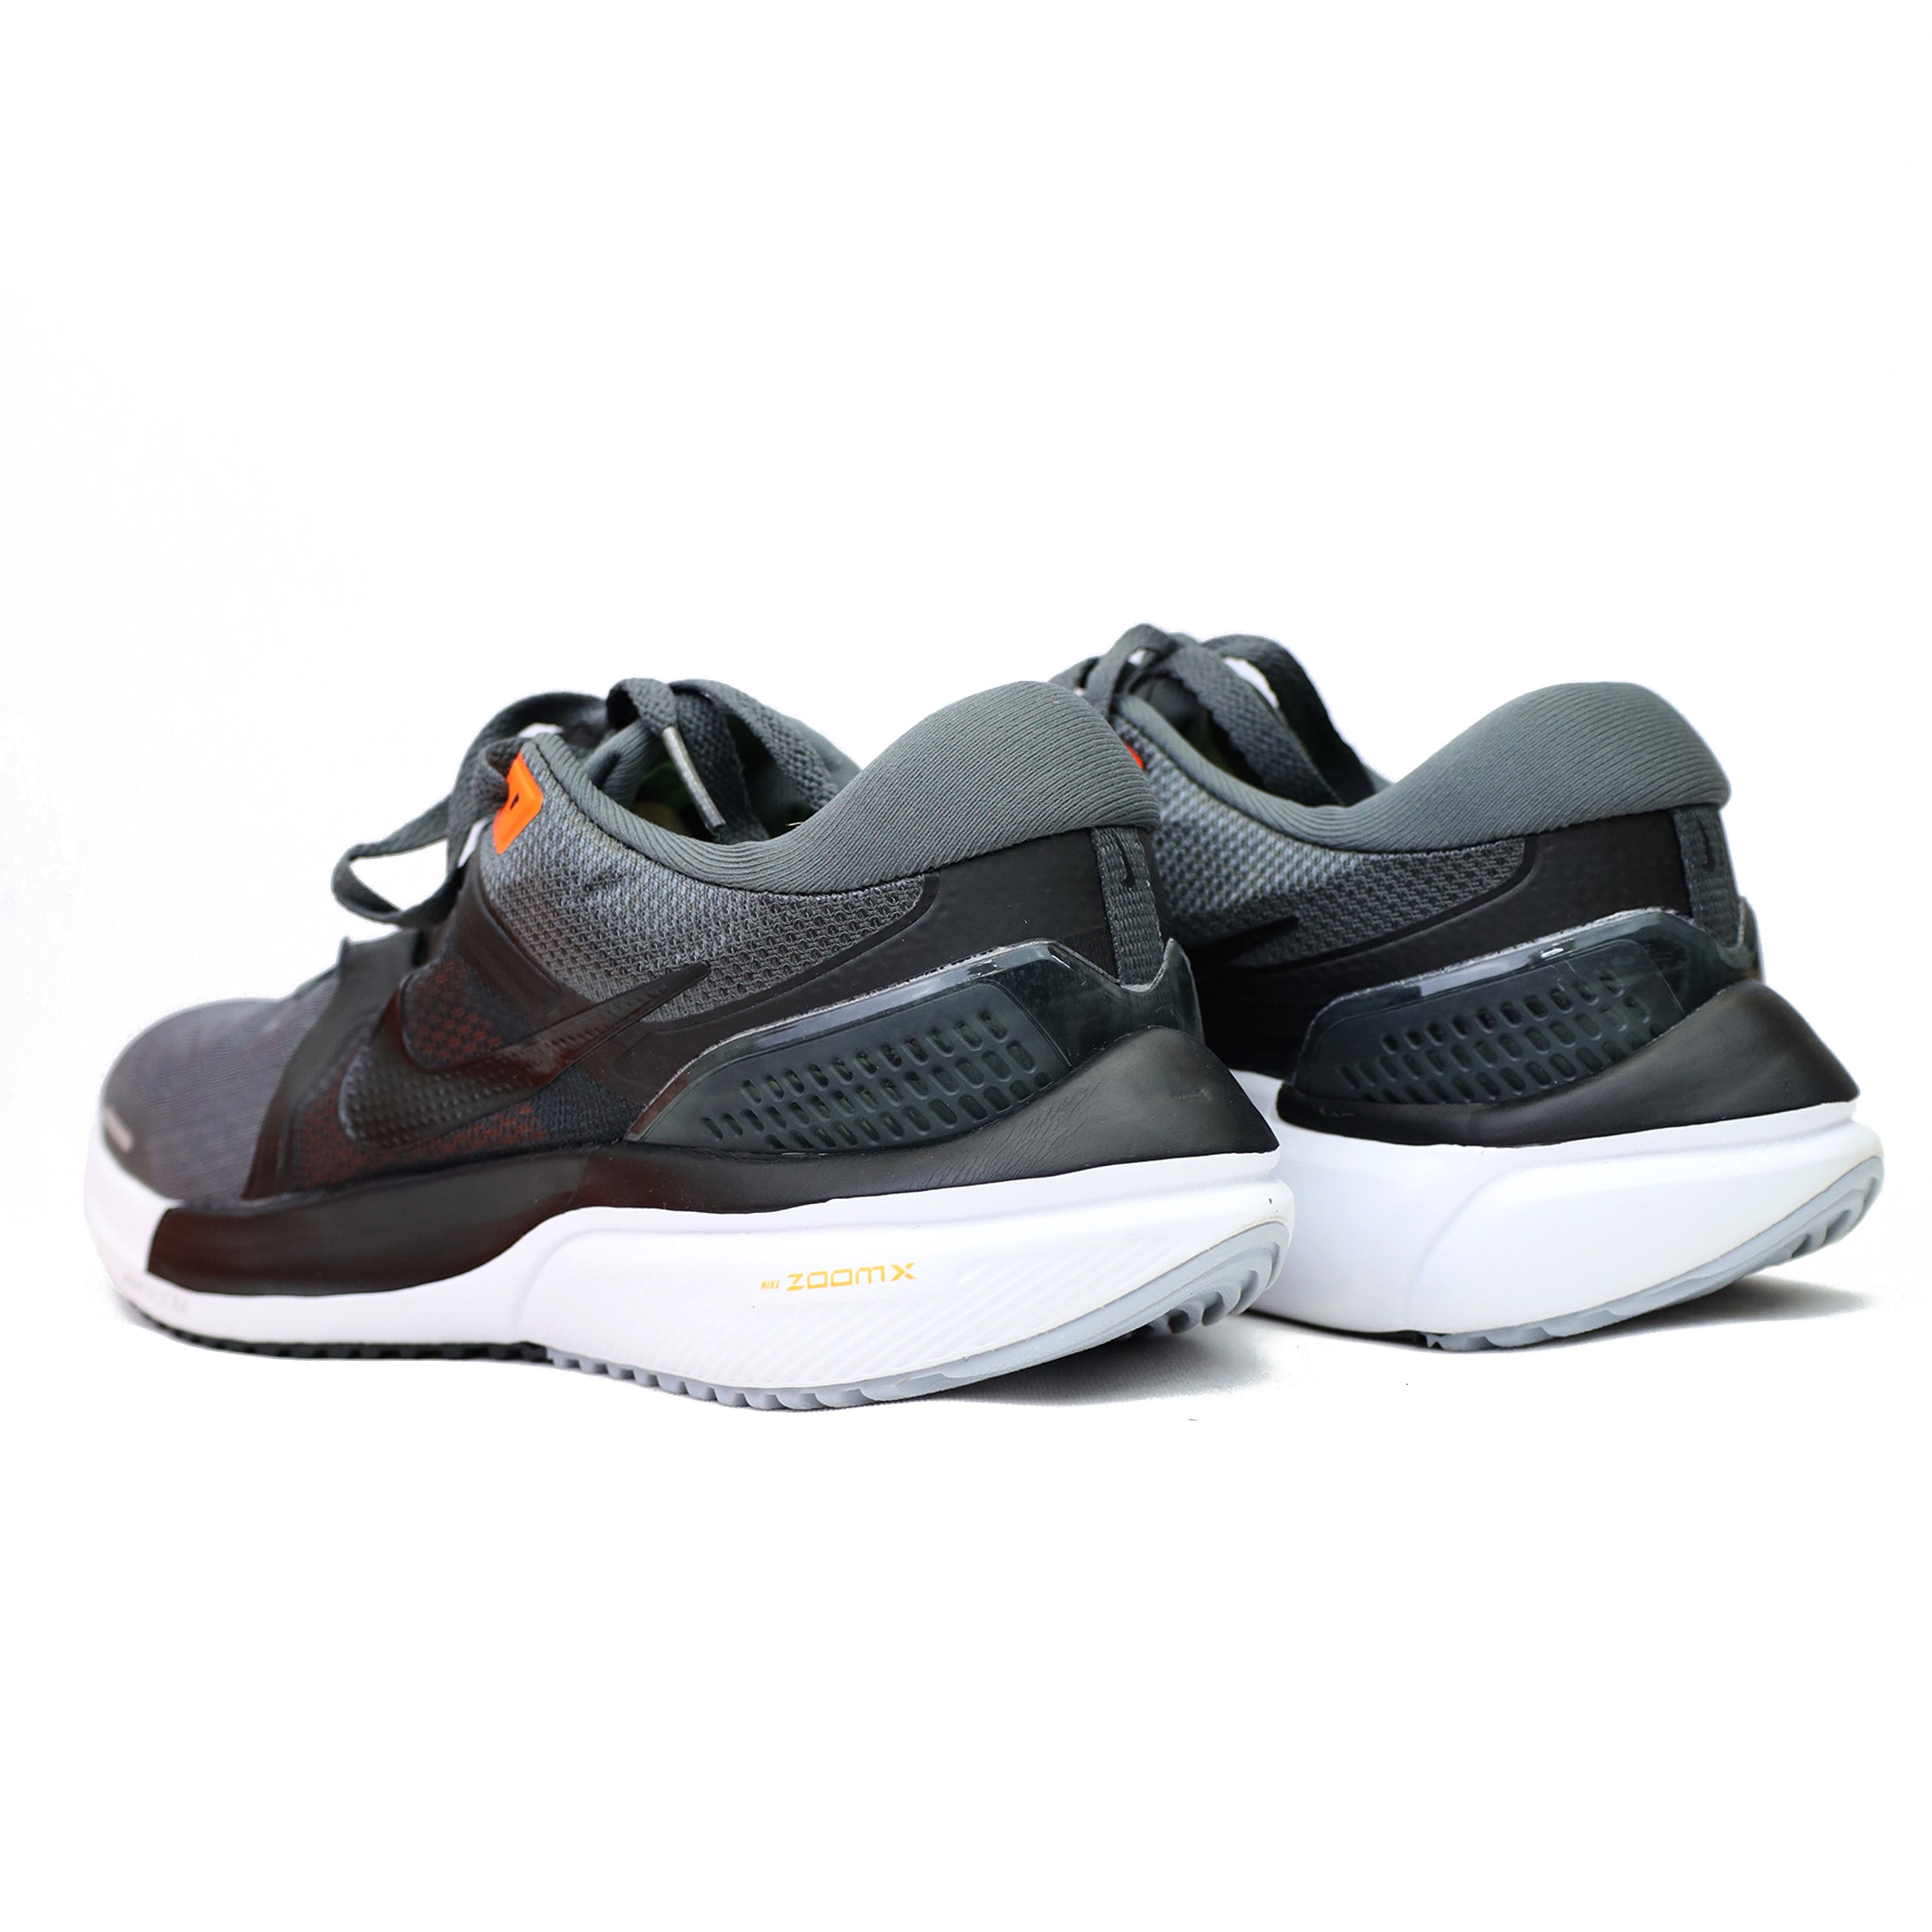 Nke Zoom Winflo 7 Sneakers